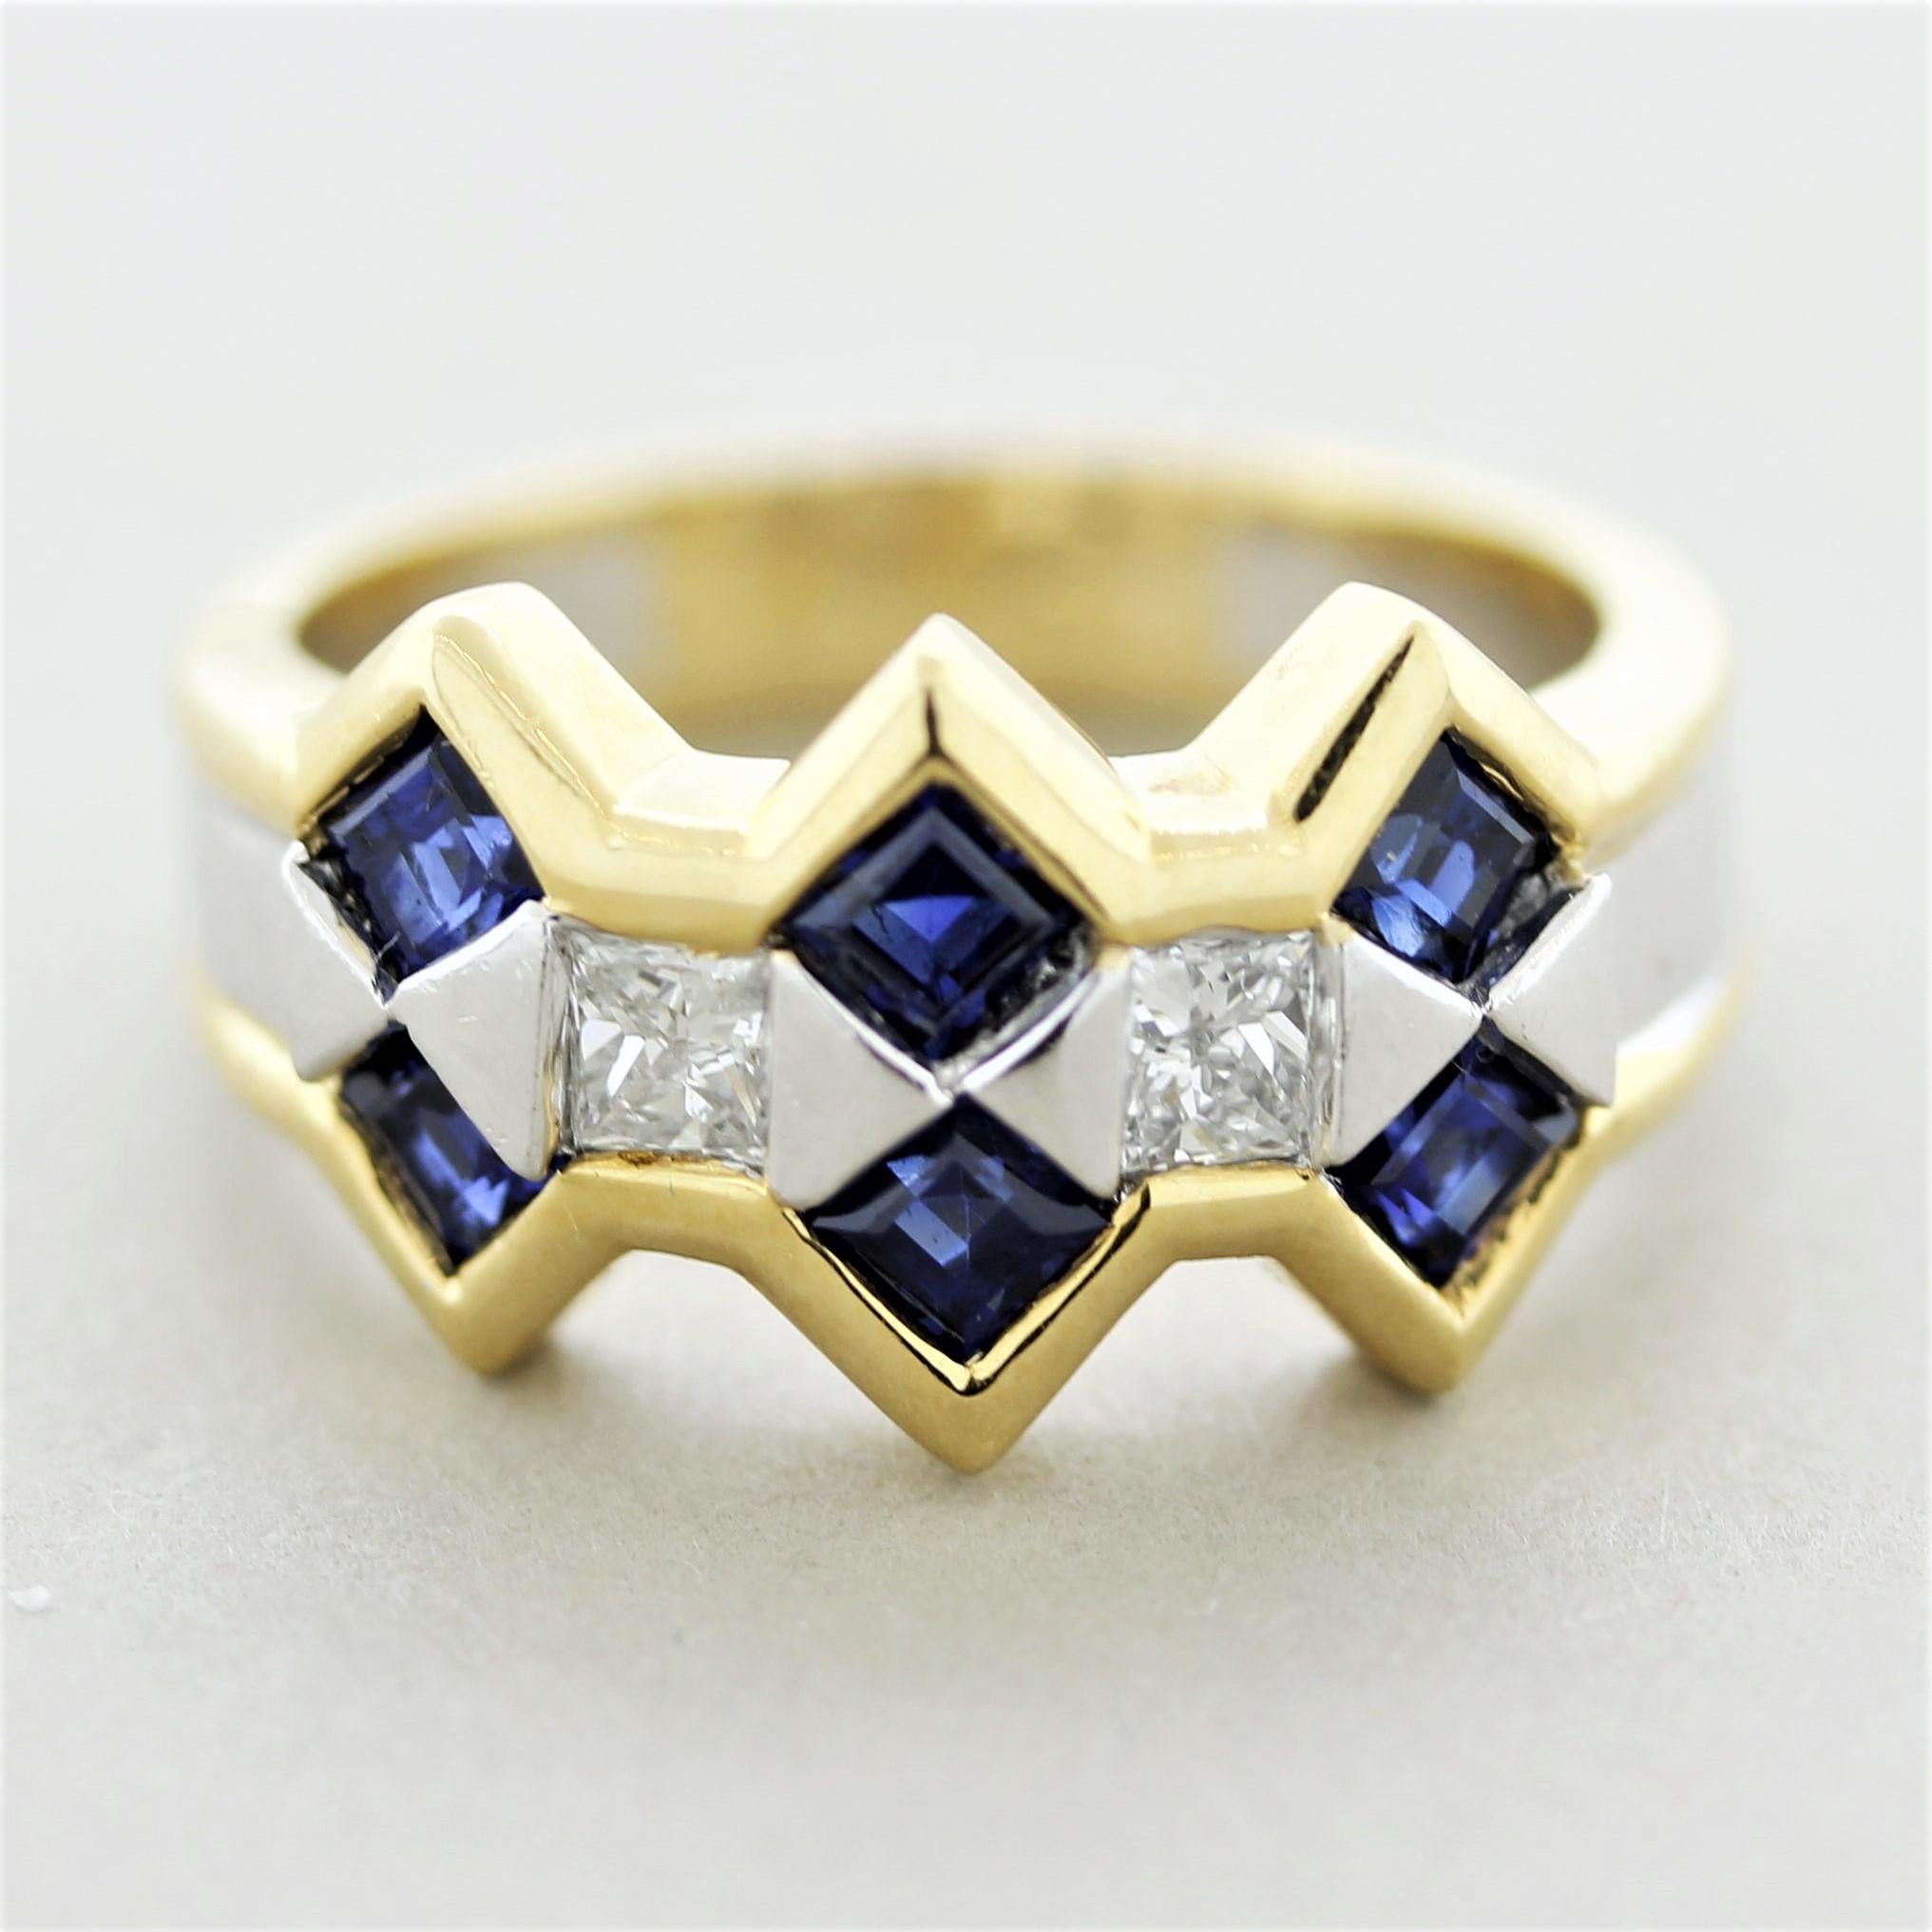 Ein stilvoller Ring aus 18k Weiß- und Gelbgold! Er besteht aus 6 quadratischen blauen Saphiren mit einem Gewicht von 1,06 Karat und 2 größeren Diamanten im Prinzessschliff mit einem Gesamtgewicht von 0,32 Karat. Hergestellt aus 18 Karat Gold und